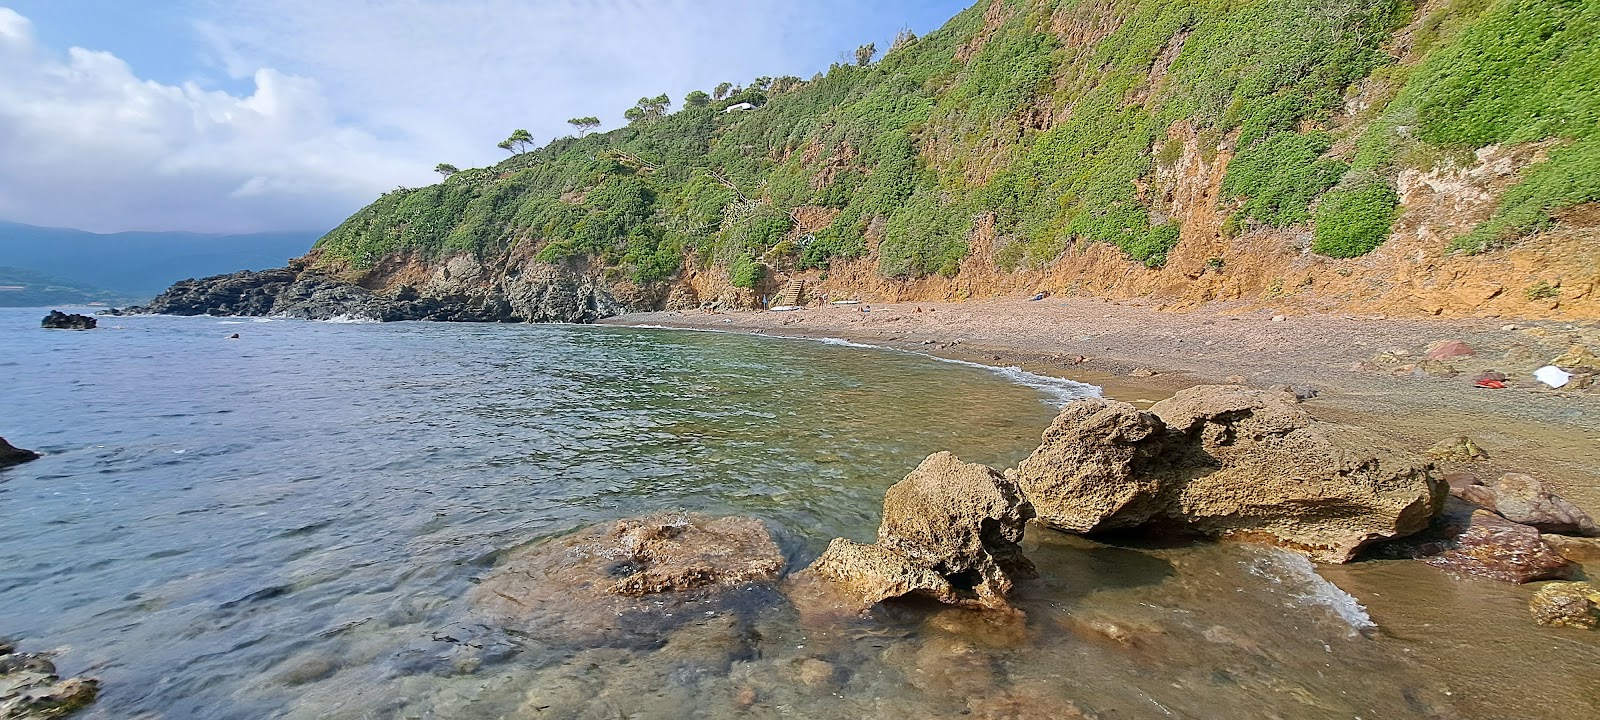 Zdjęcie Spiaggia Canata położony w naturalnym obszarze